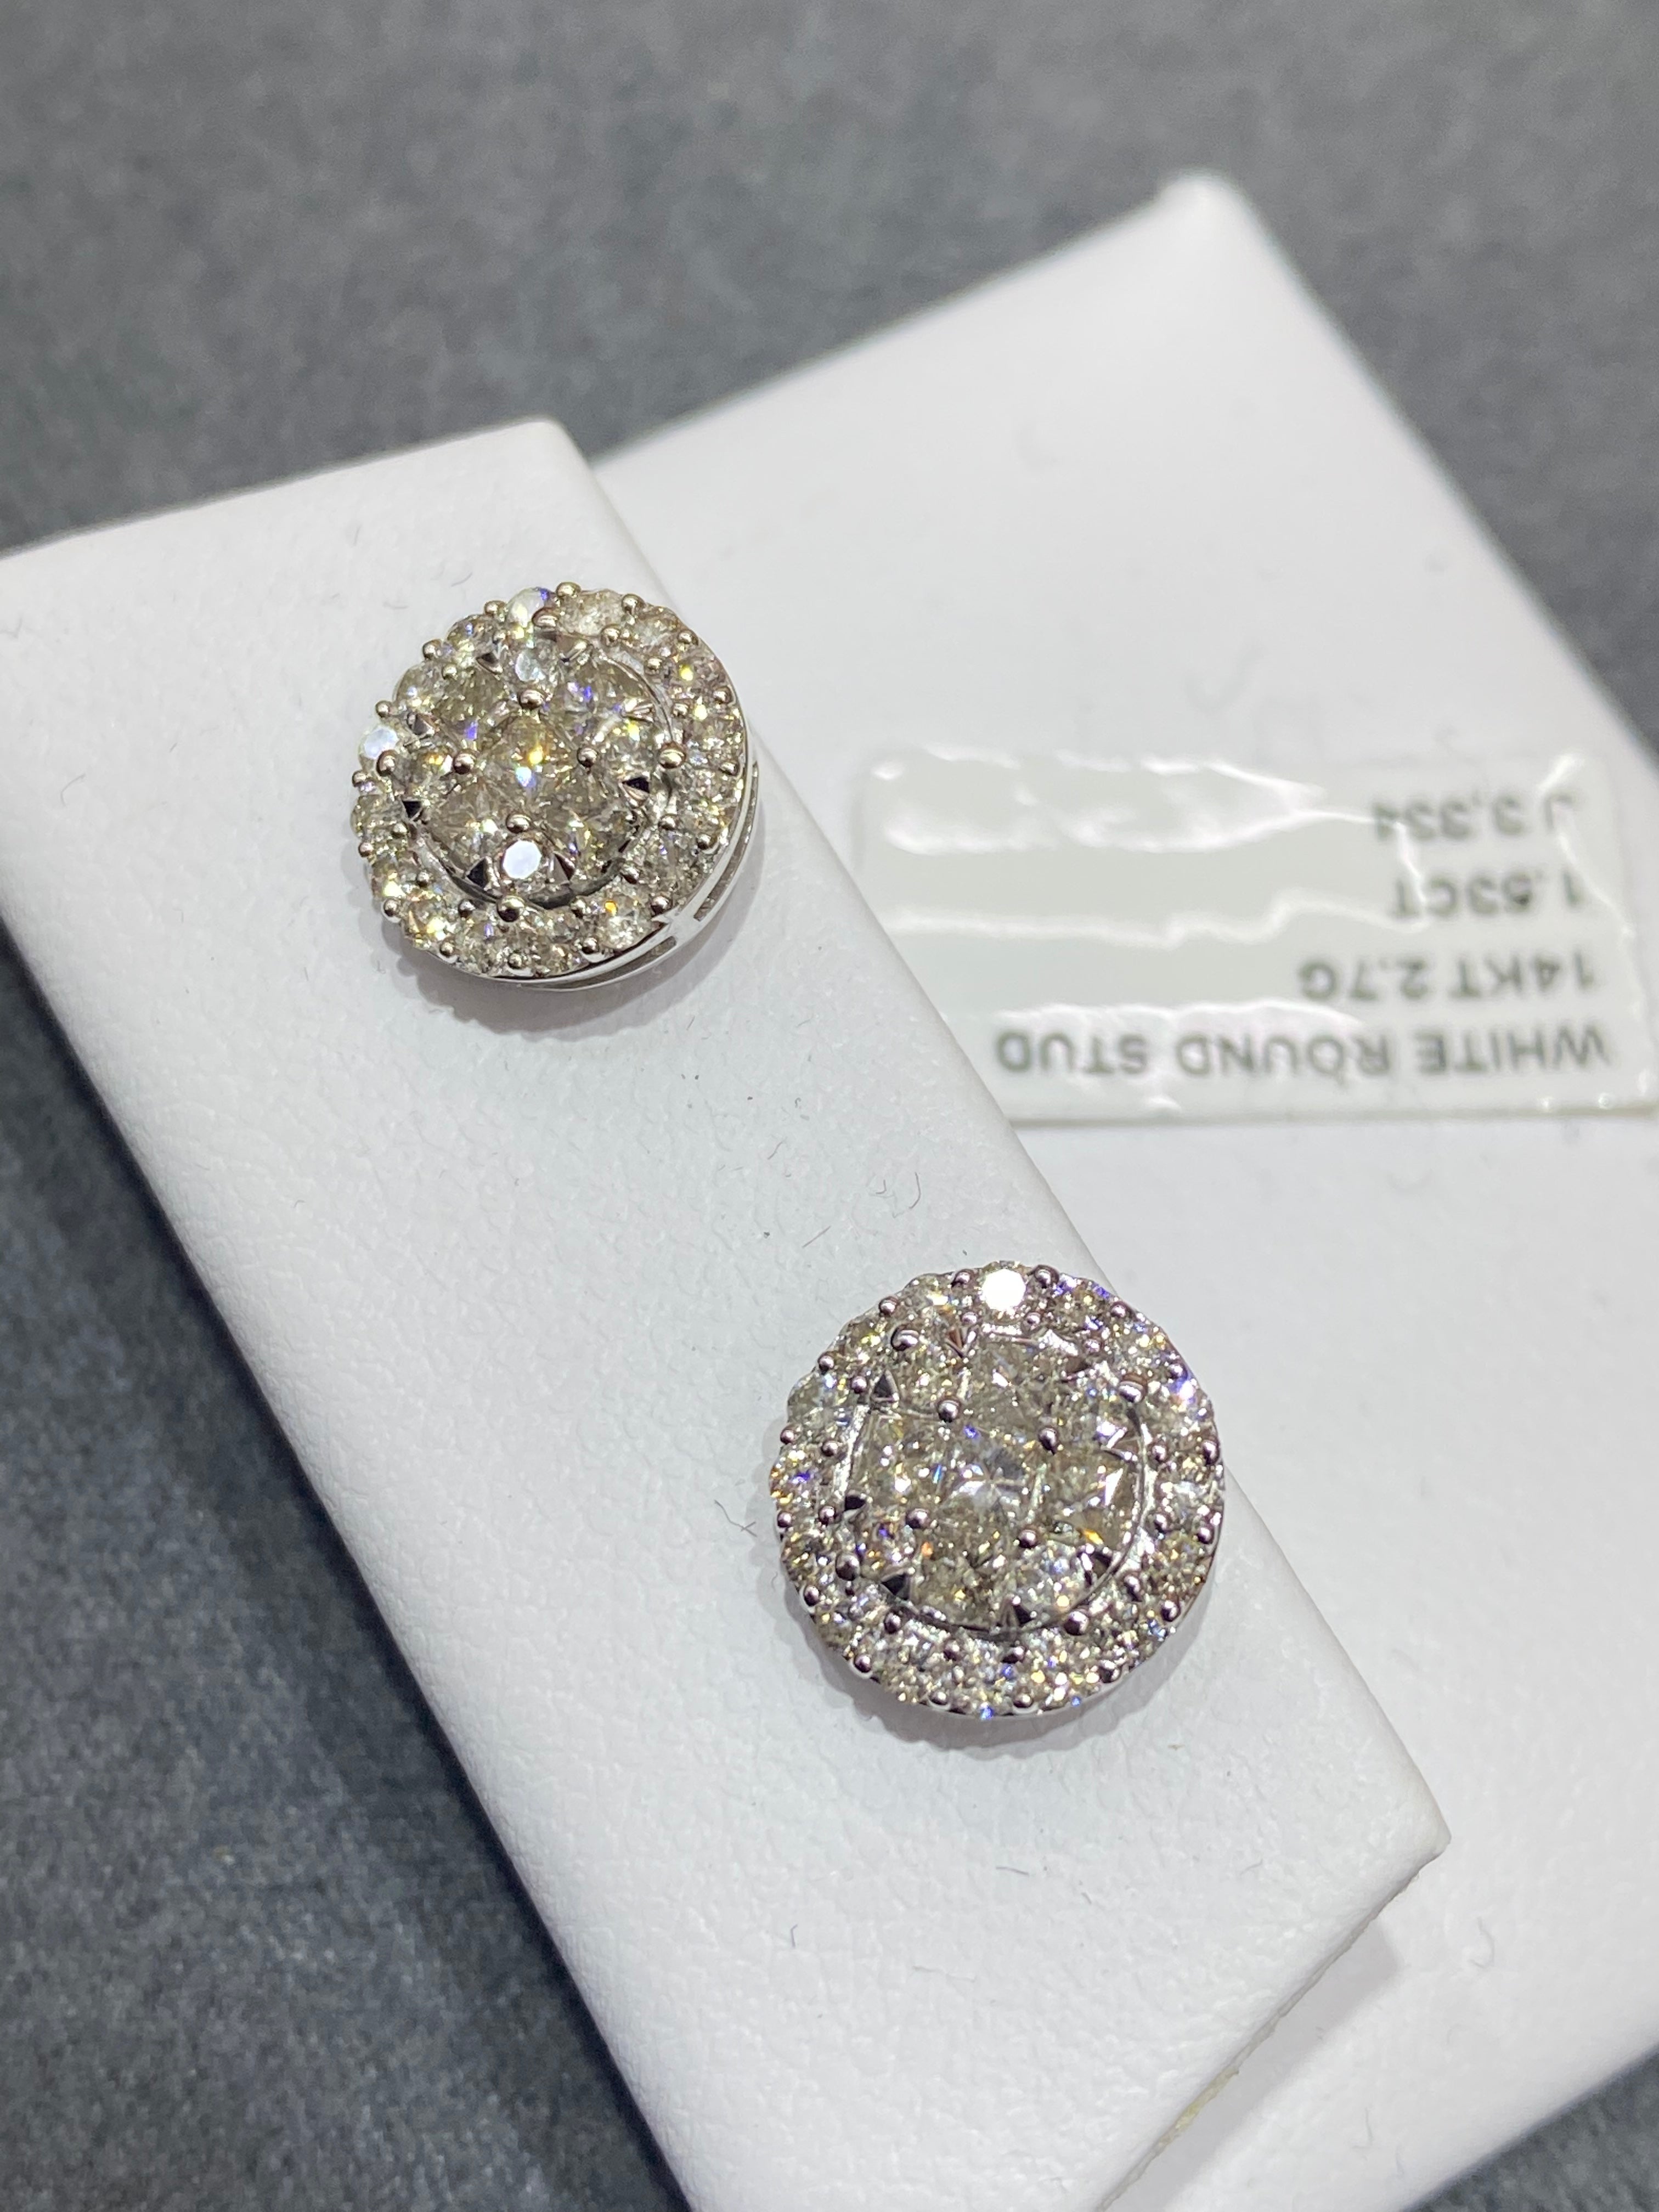 Vs1 1.2 carats natural diamonds 💎14k white gold stud earrings